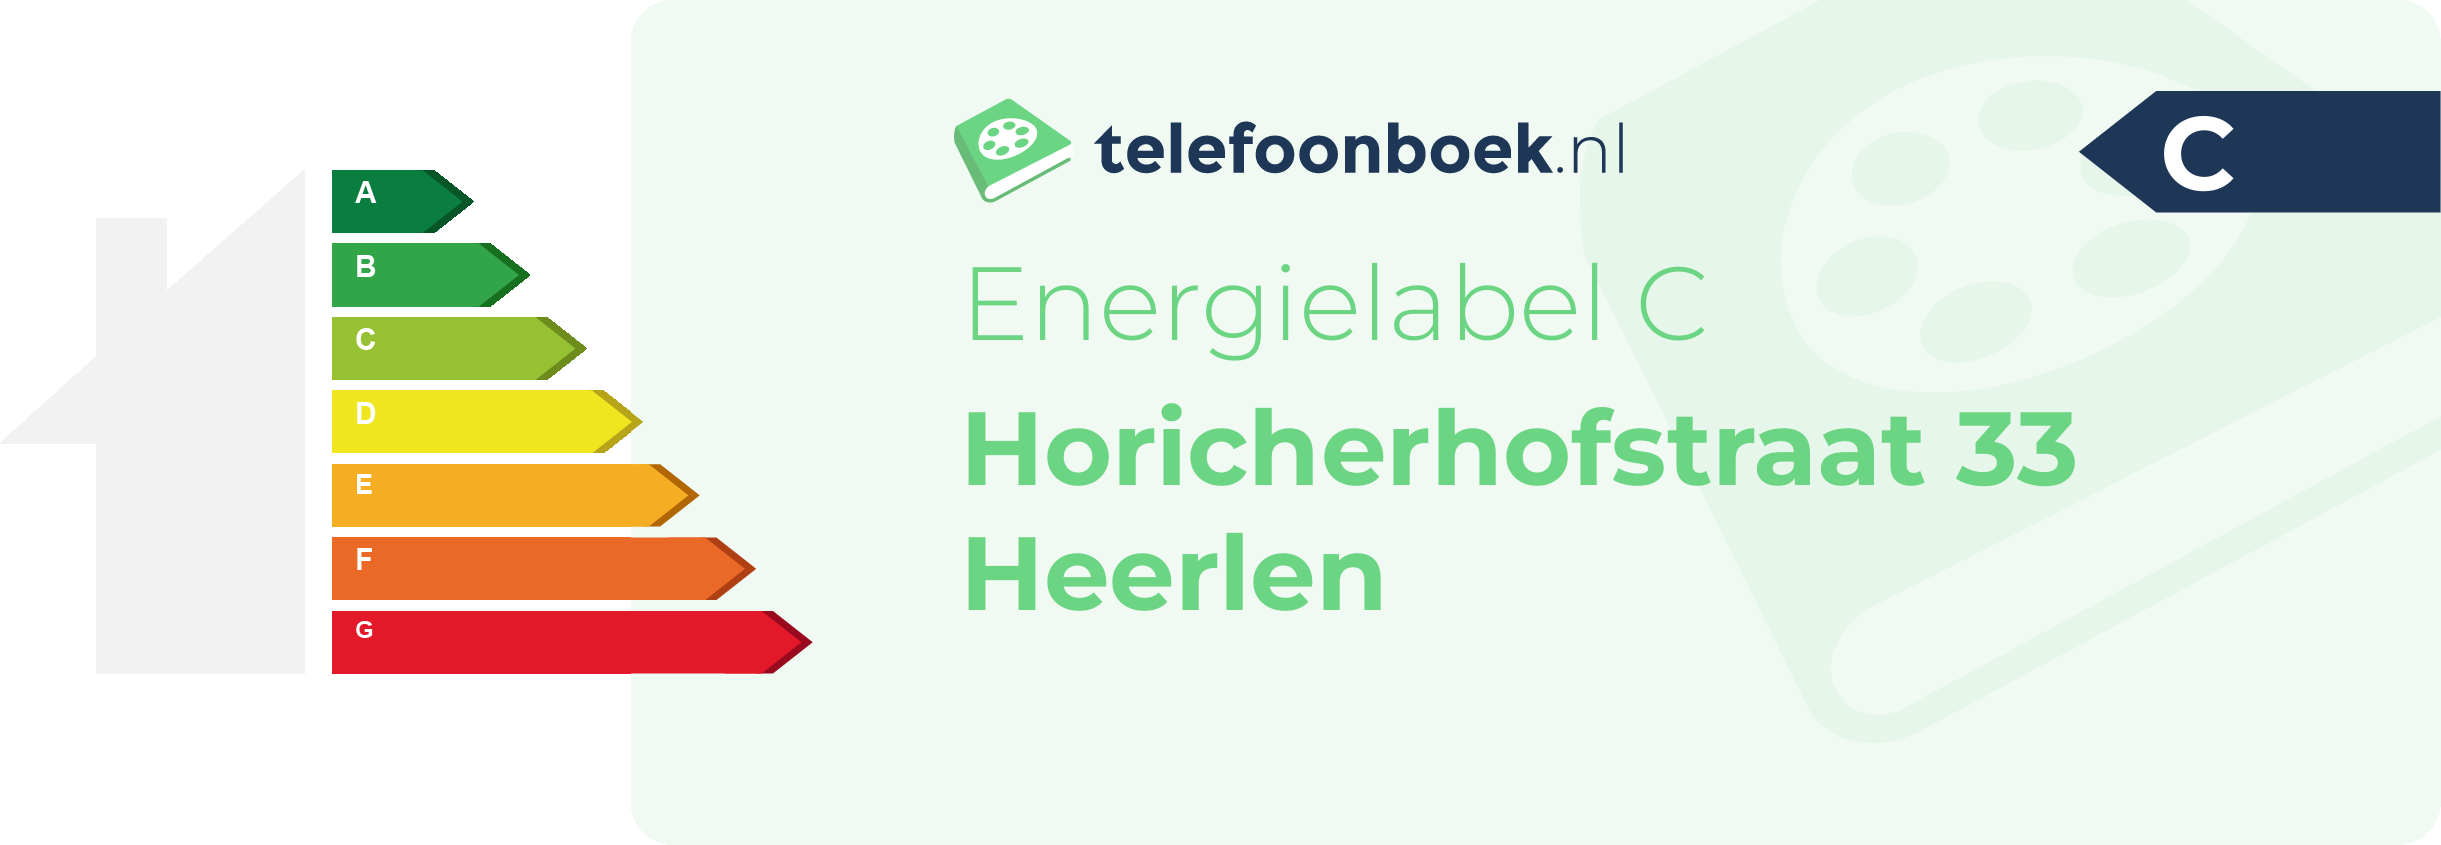 Energielabel Horicherhofstraat 33 Heerlen